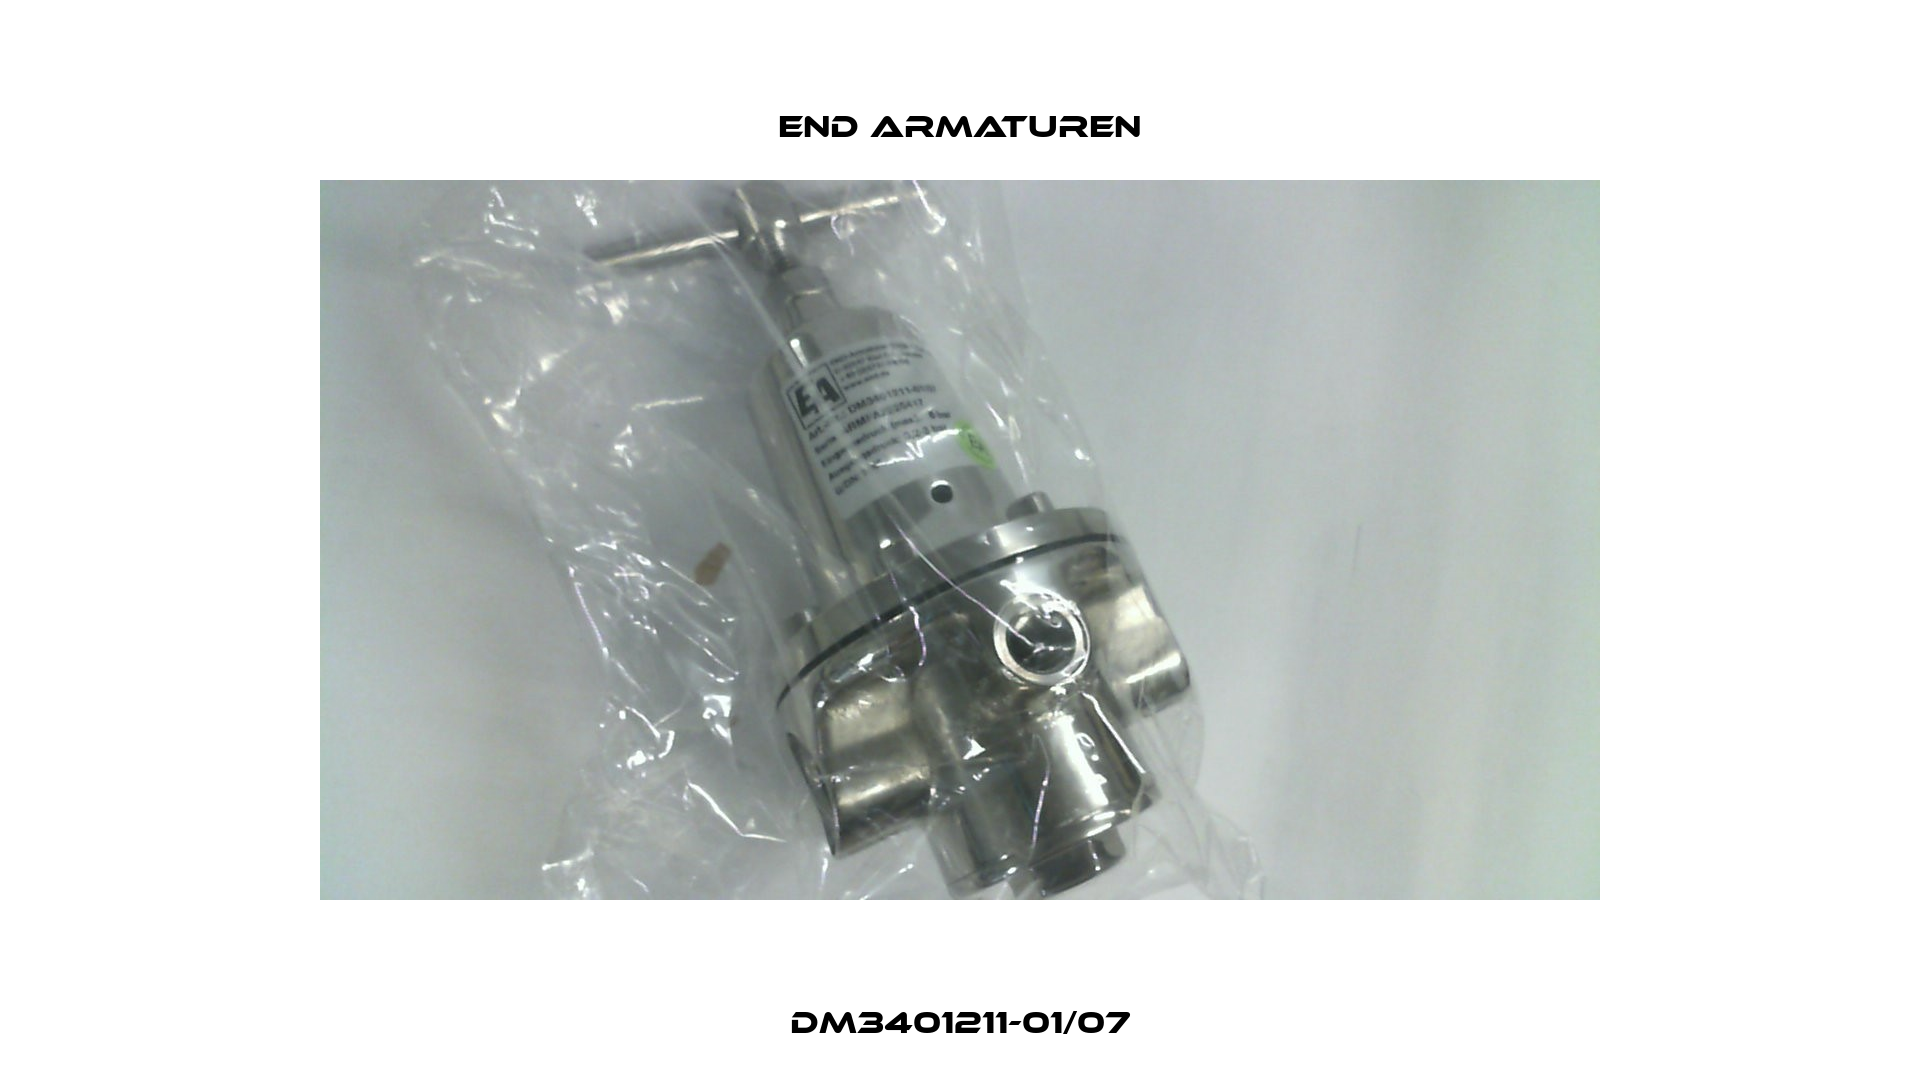 DM3401211-01/07 End Armaturen